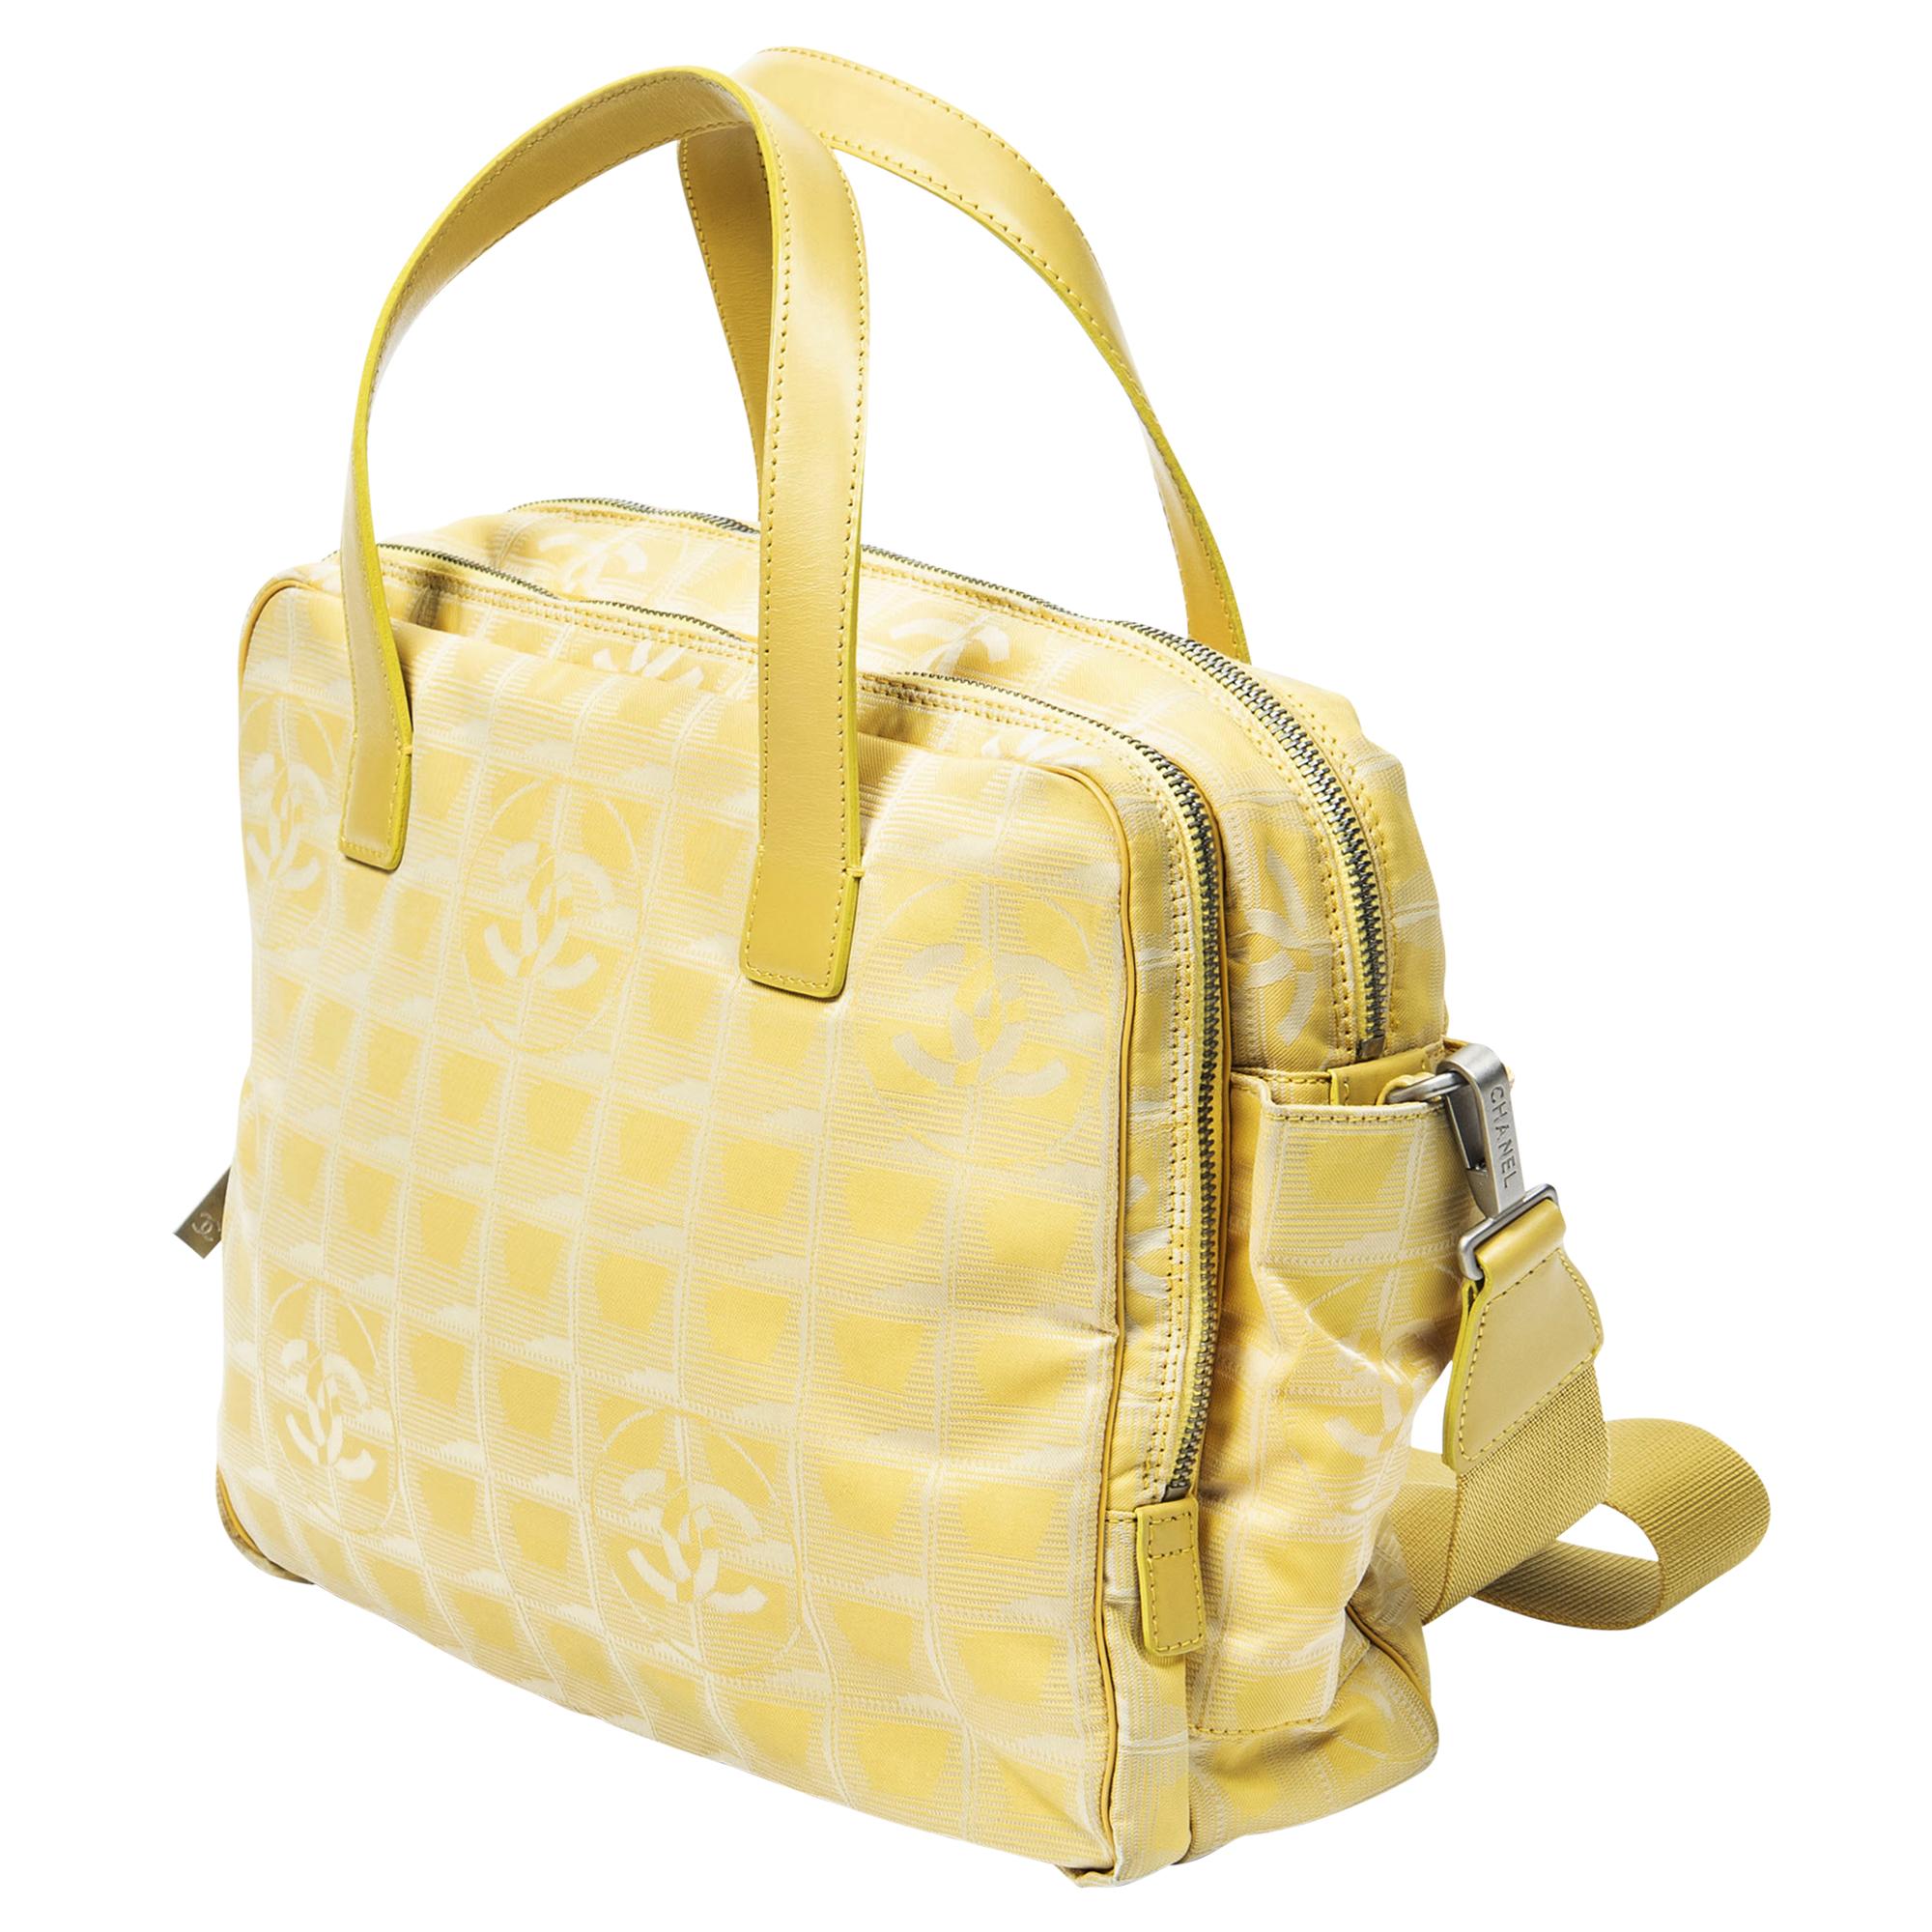 Die Chanel 2002 Yellow Travel Ligne Bag w/ Strap ist ein lebhaftes Accessoire für modebewusste Entdeckerinnen. Aus strapazierfähigem Canvas in einem sonnigen Gelbton gefertigt, strahlt er verspielte Eleganz aus. Die Tasche ist mit silbernen